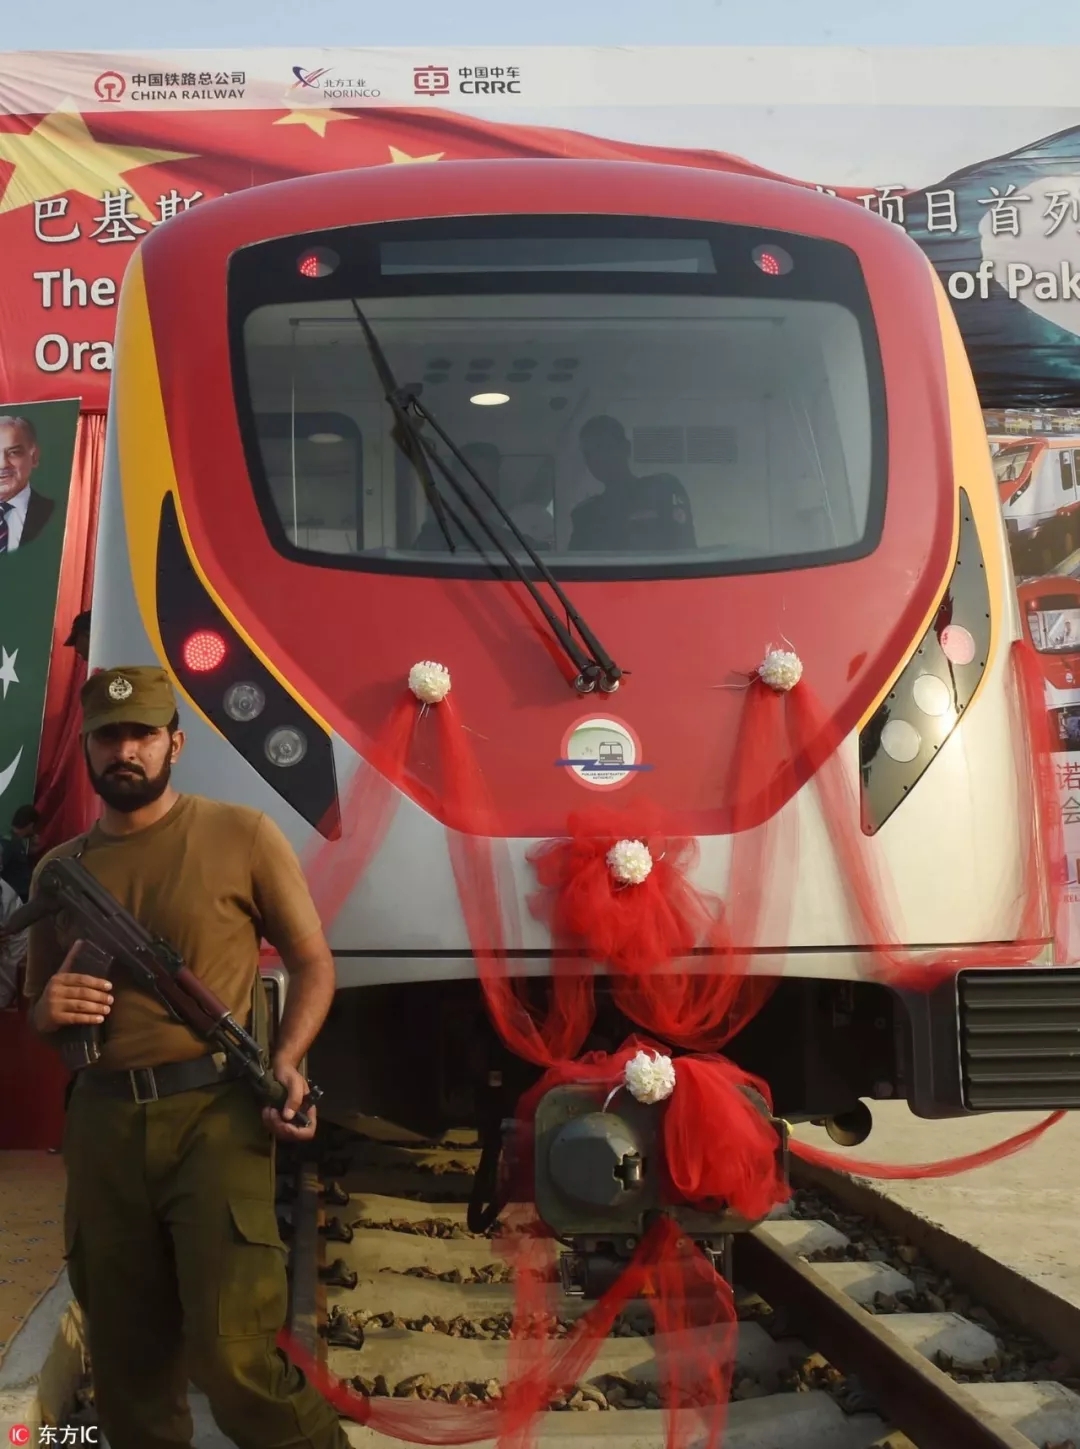 VR彩票:中巴经济走廊首个大型轨道交通项目在巴基斯坦拉合尔橙线正式开通